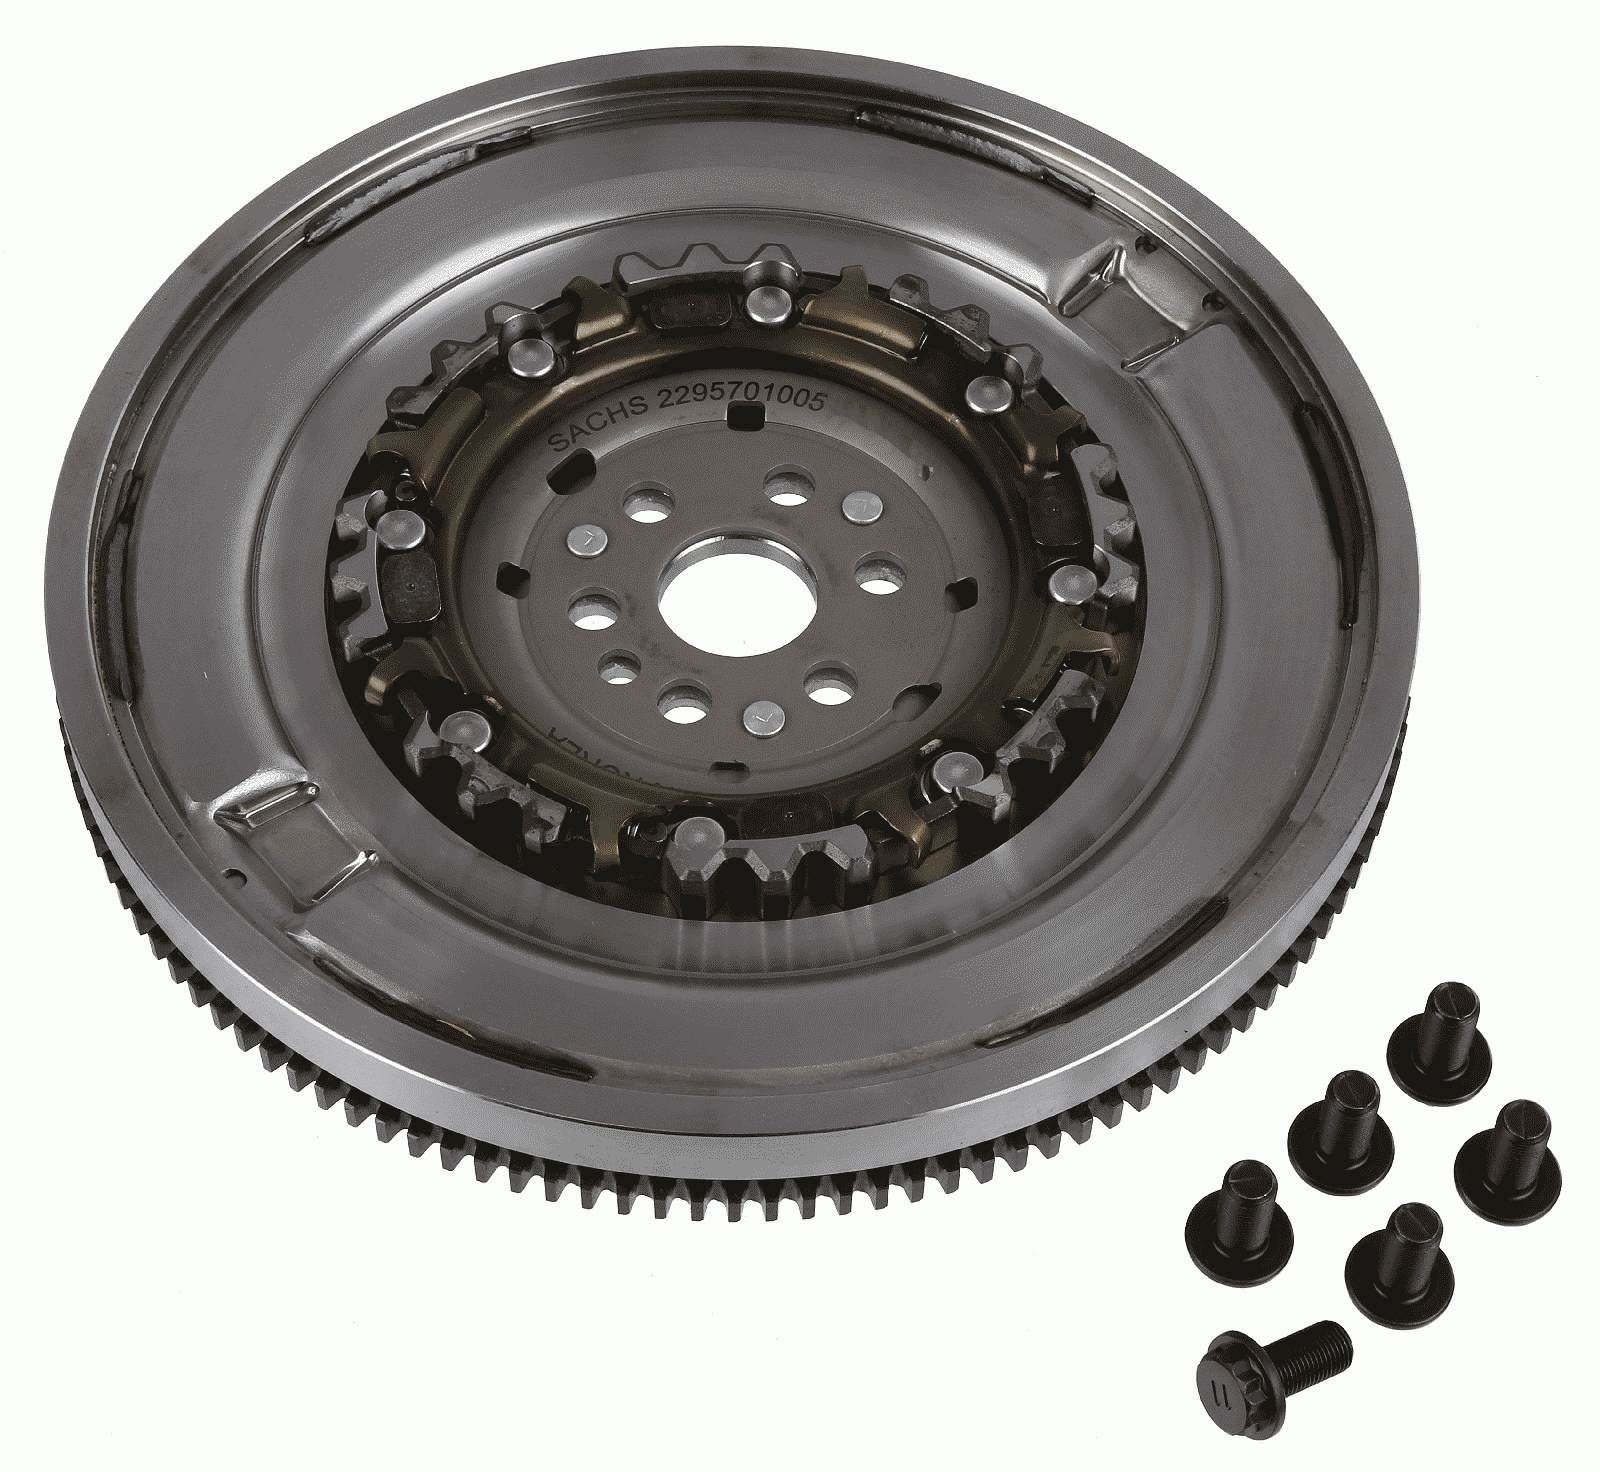 SACHS 2295 701 005 Flywheel with flywheel screws